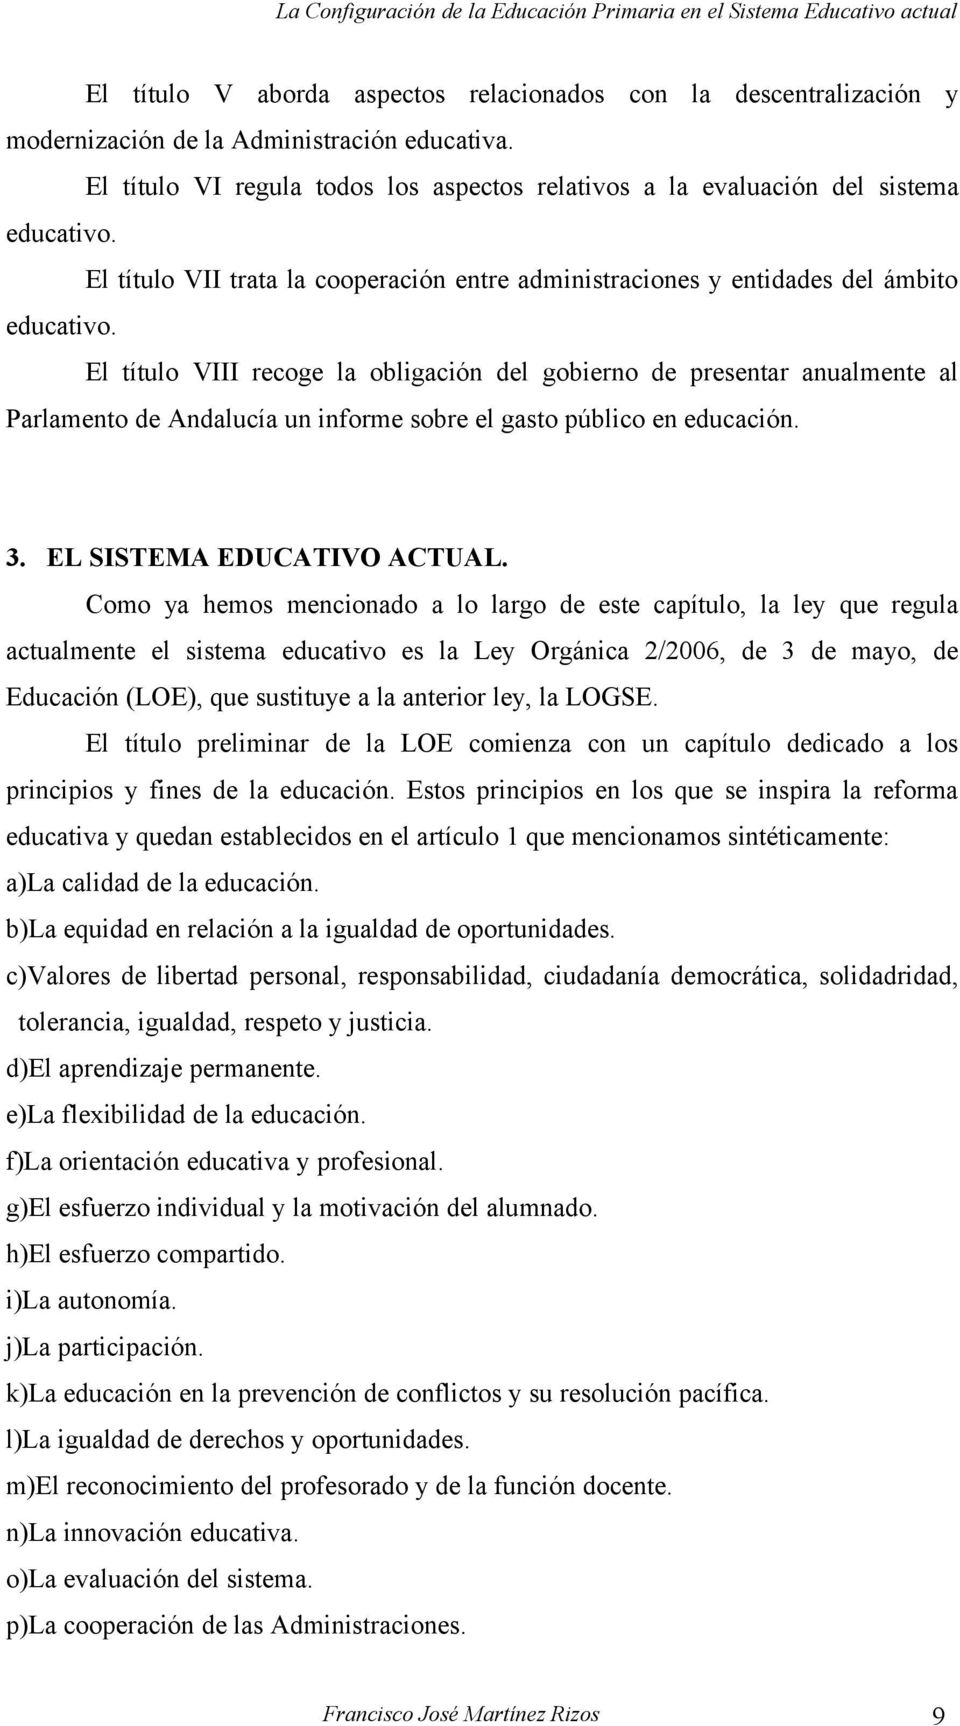 El título VIII recoge la obligación del gobierno de presentar anualmente al Parlamento de Andalucía un informe sobre el gasto público en educación. 3. EL SISTEMA EDUCATIVO ACTUAL.